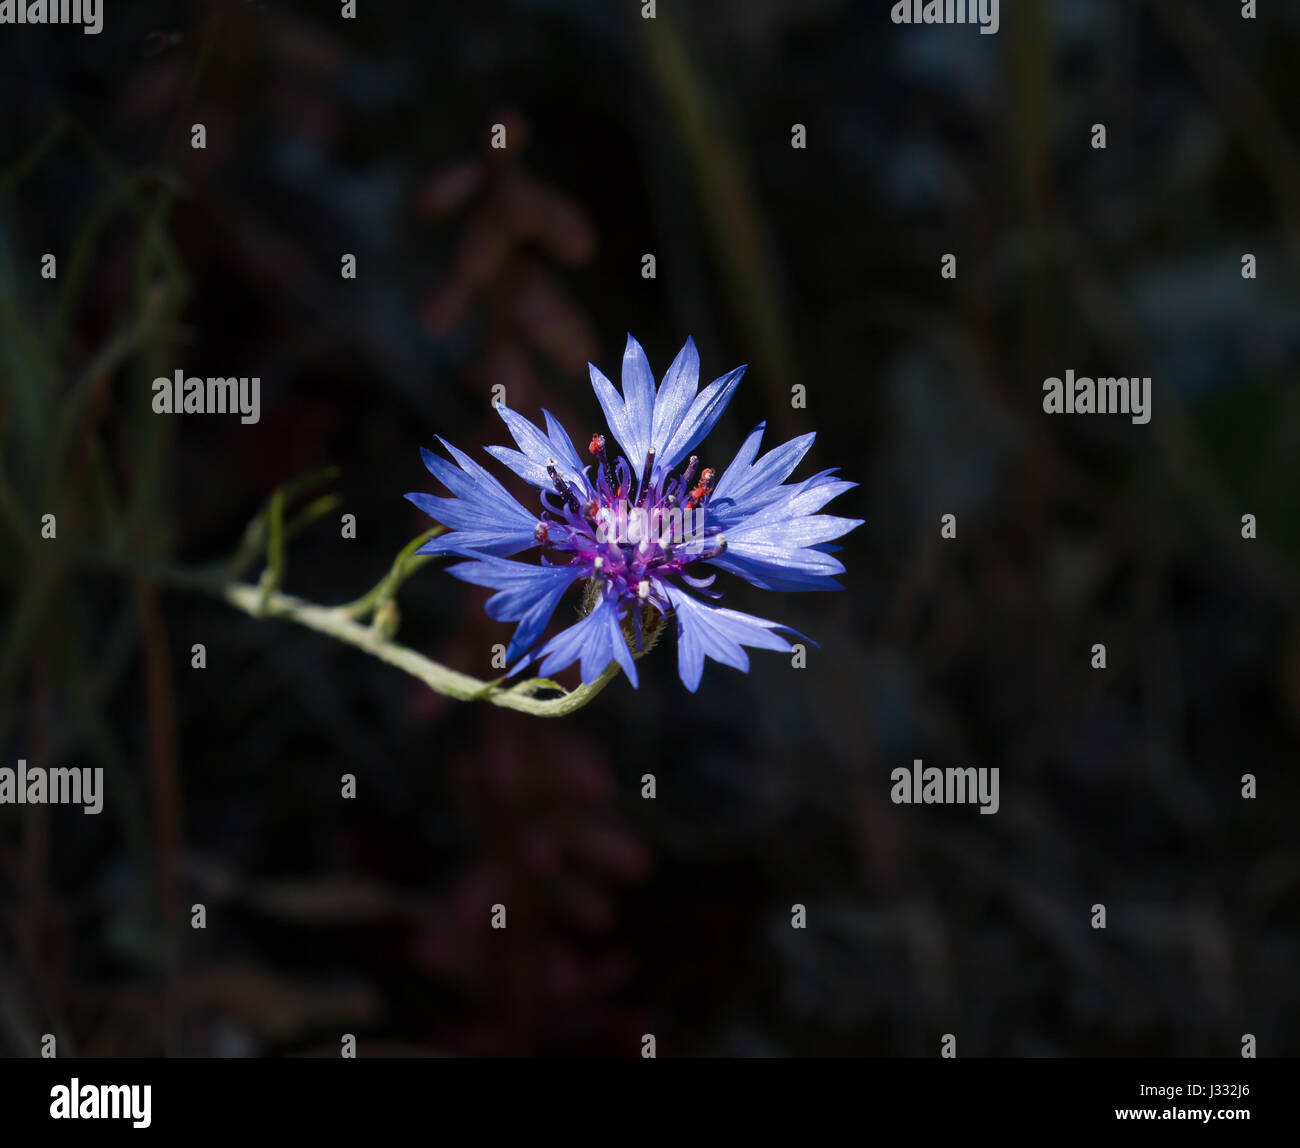 Vivid blue Cornflower against dark background. Stock Photo